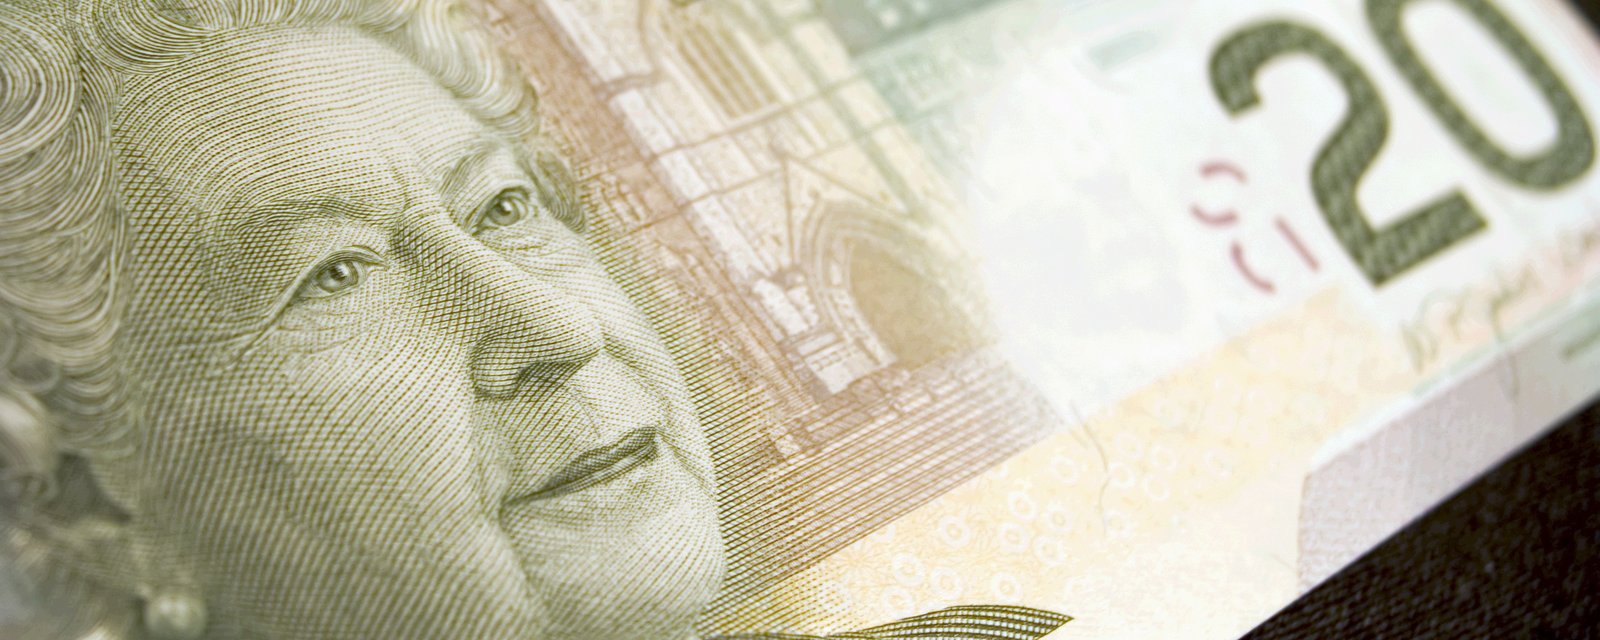 Le roi Charles apparaîtra-t-il sur la monnaie canadienne à la place de la reine ?